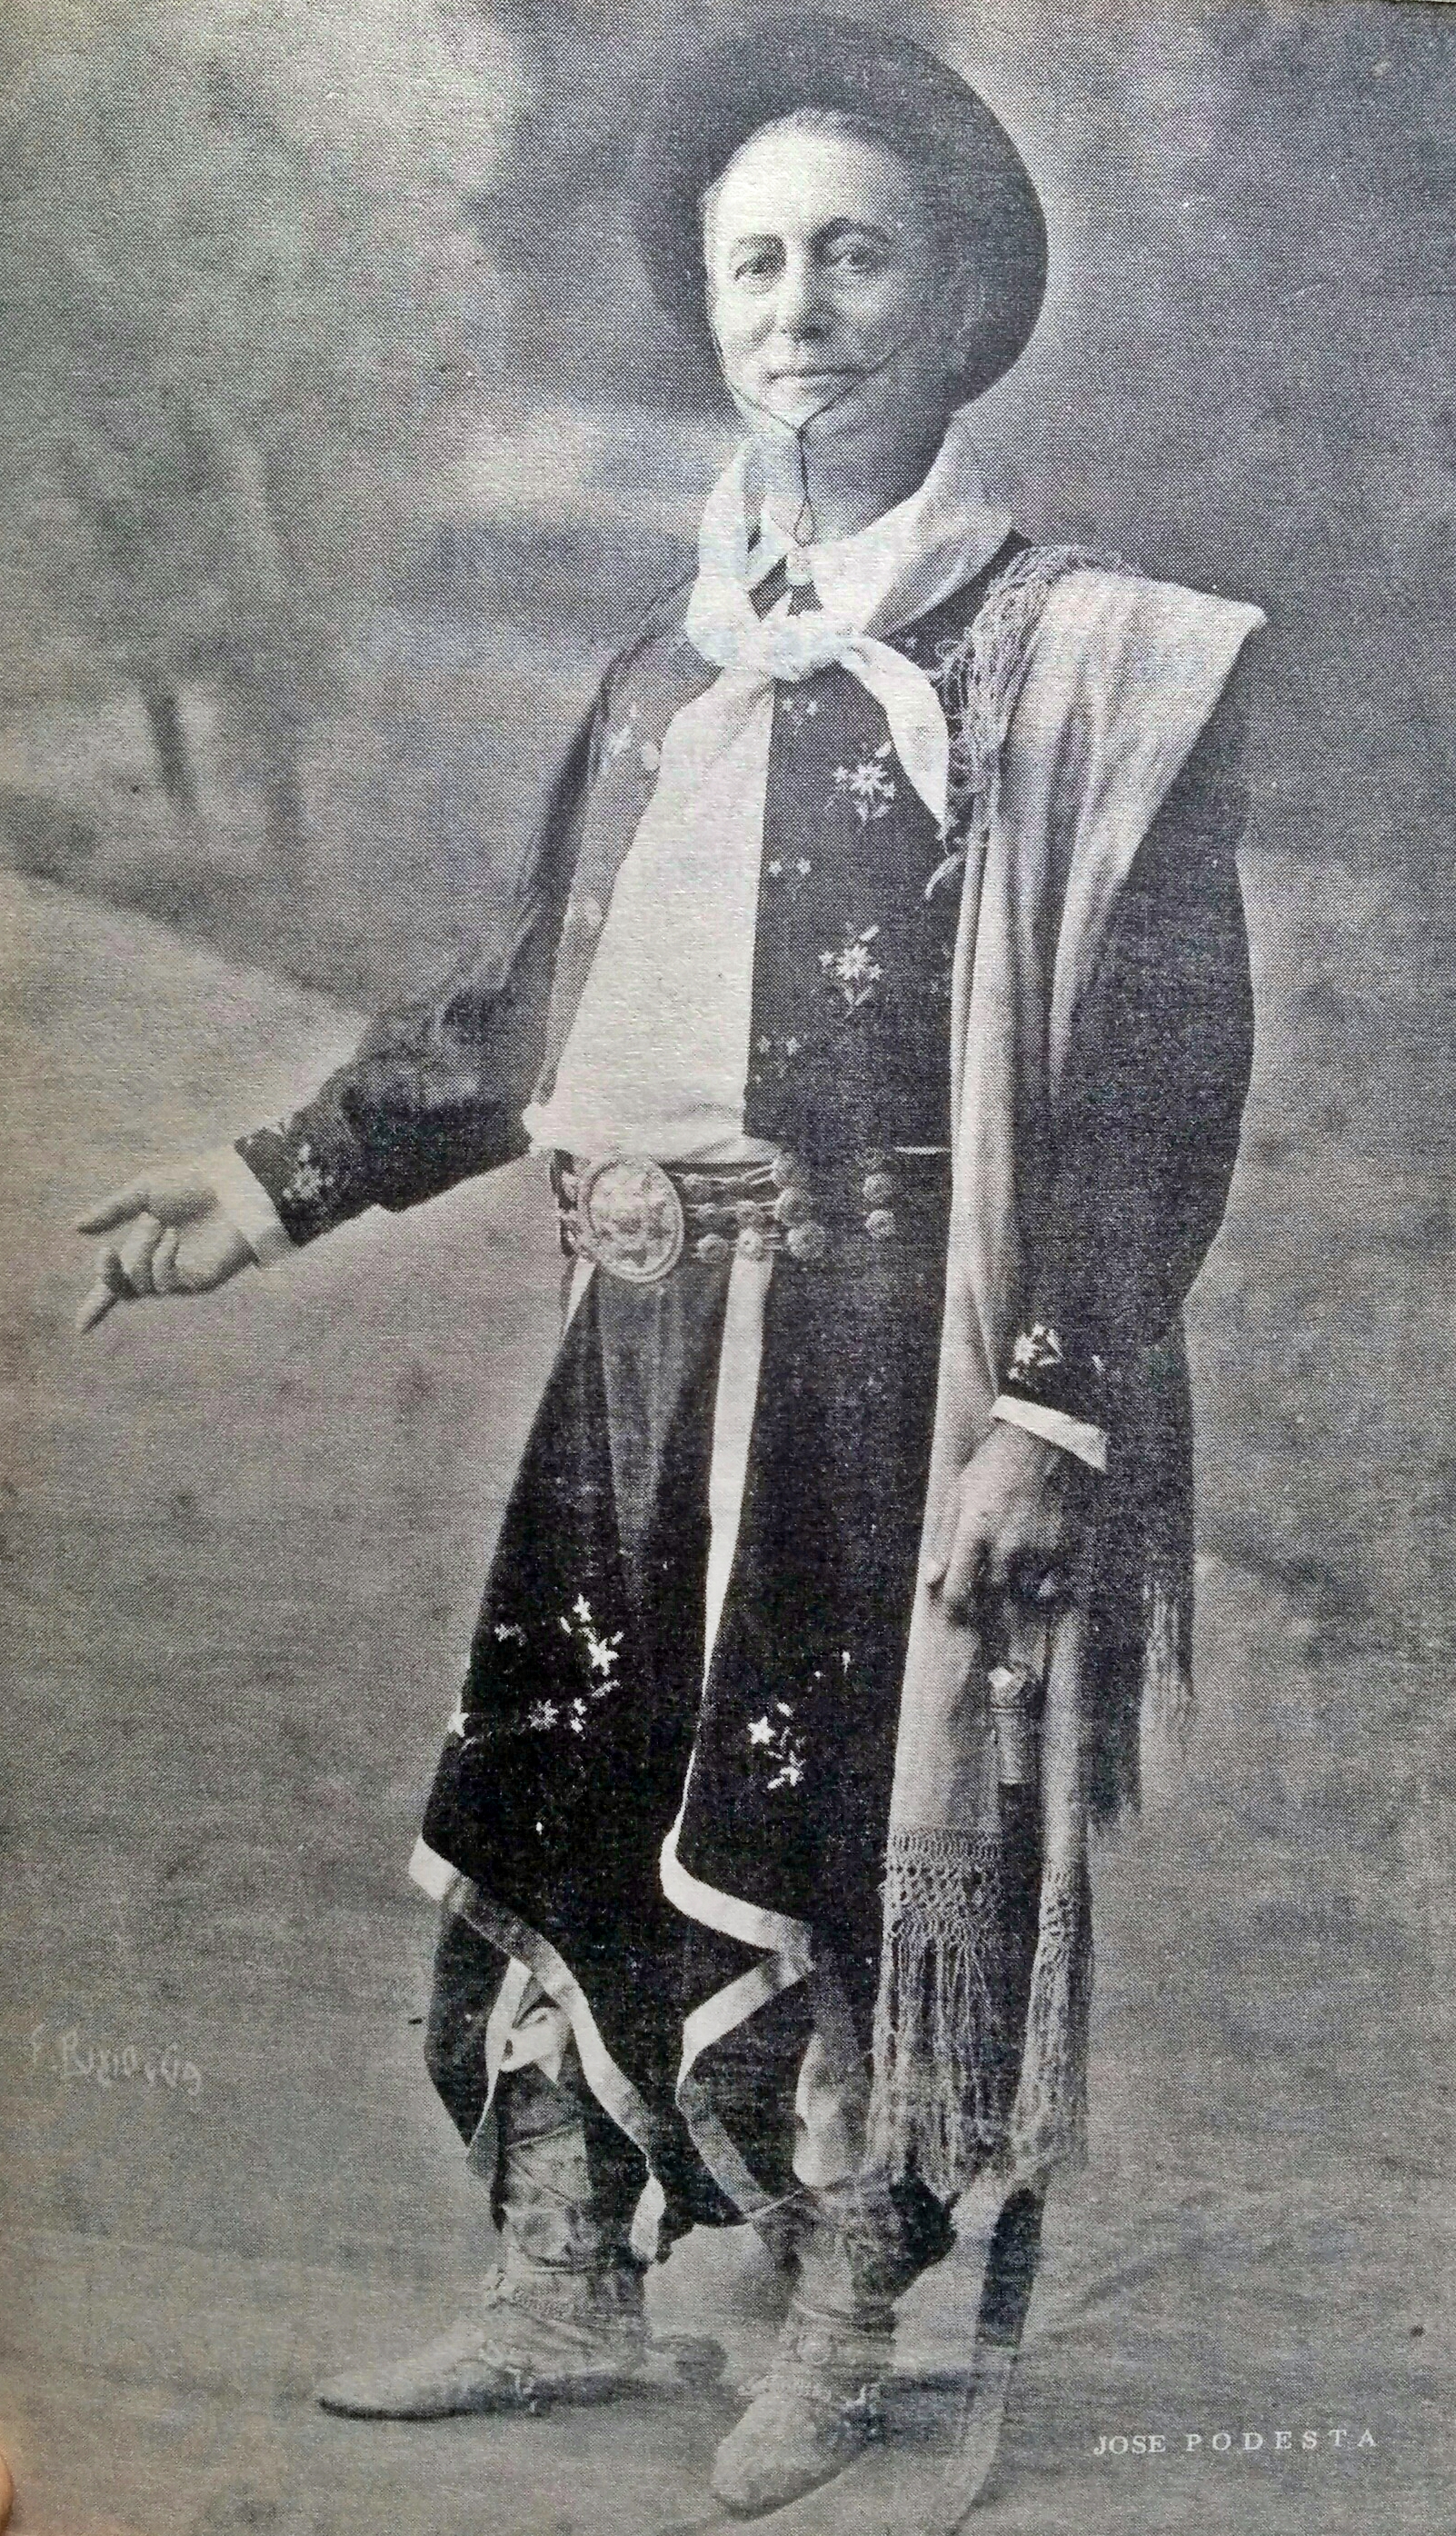 El actor José Podestá (1858-1937), en el rol protagónico de Juan Moreira